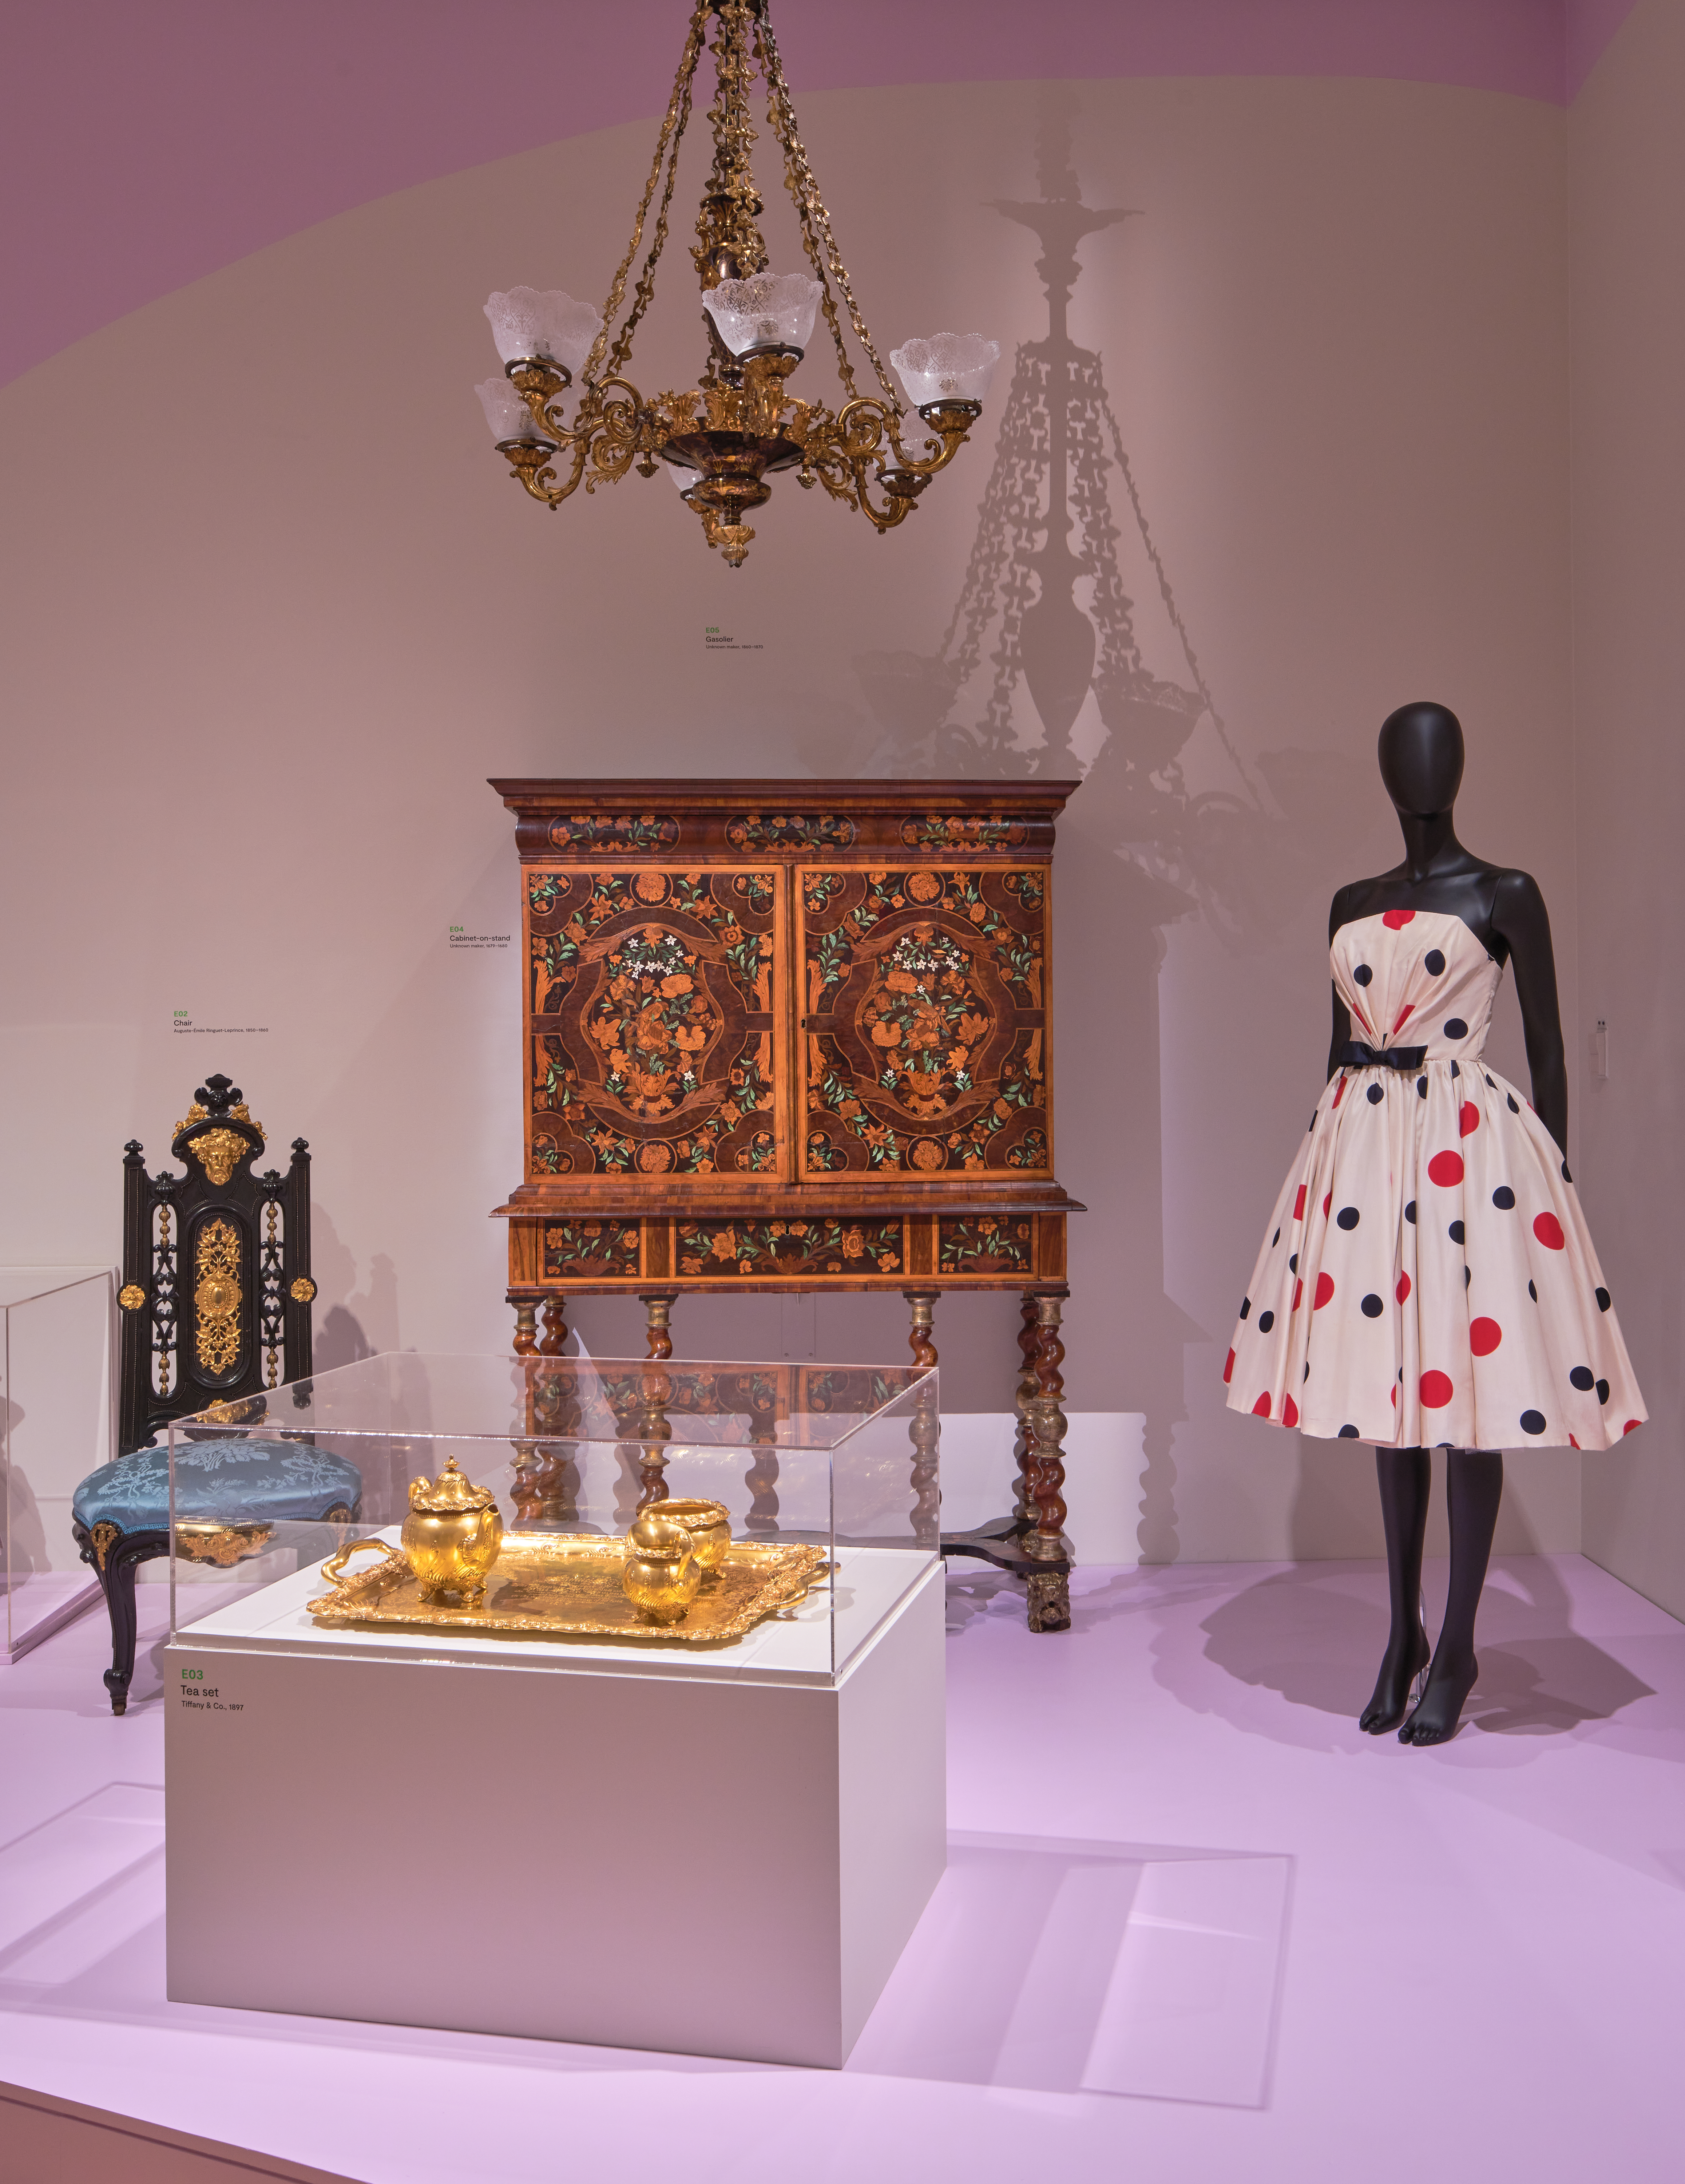 En una galería se exhiben un maniquí y muebles ornamentados.